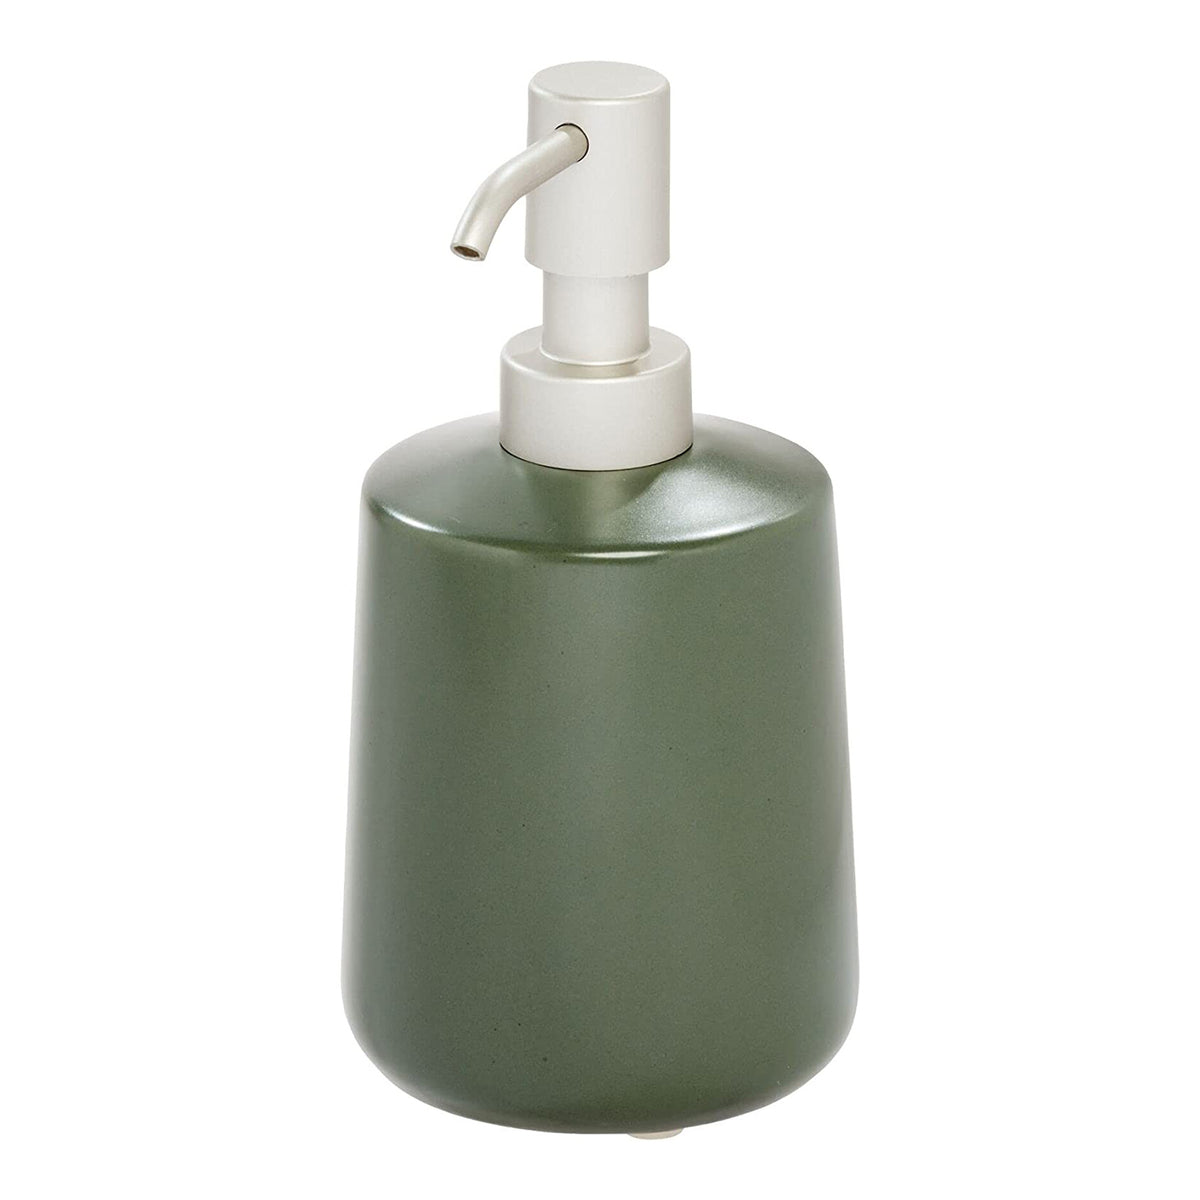 Short Ceramic Soap Dispenser - Green